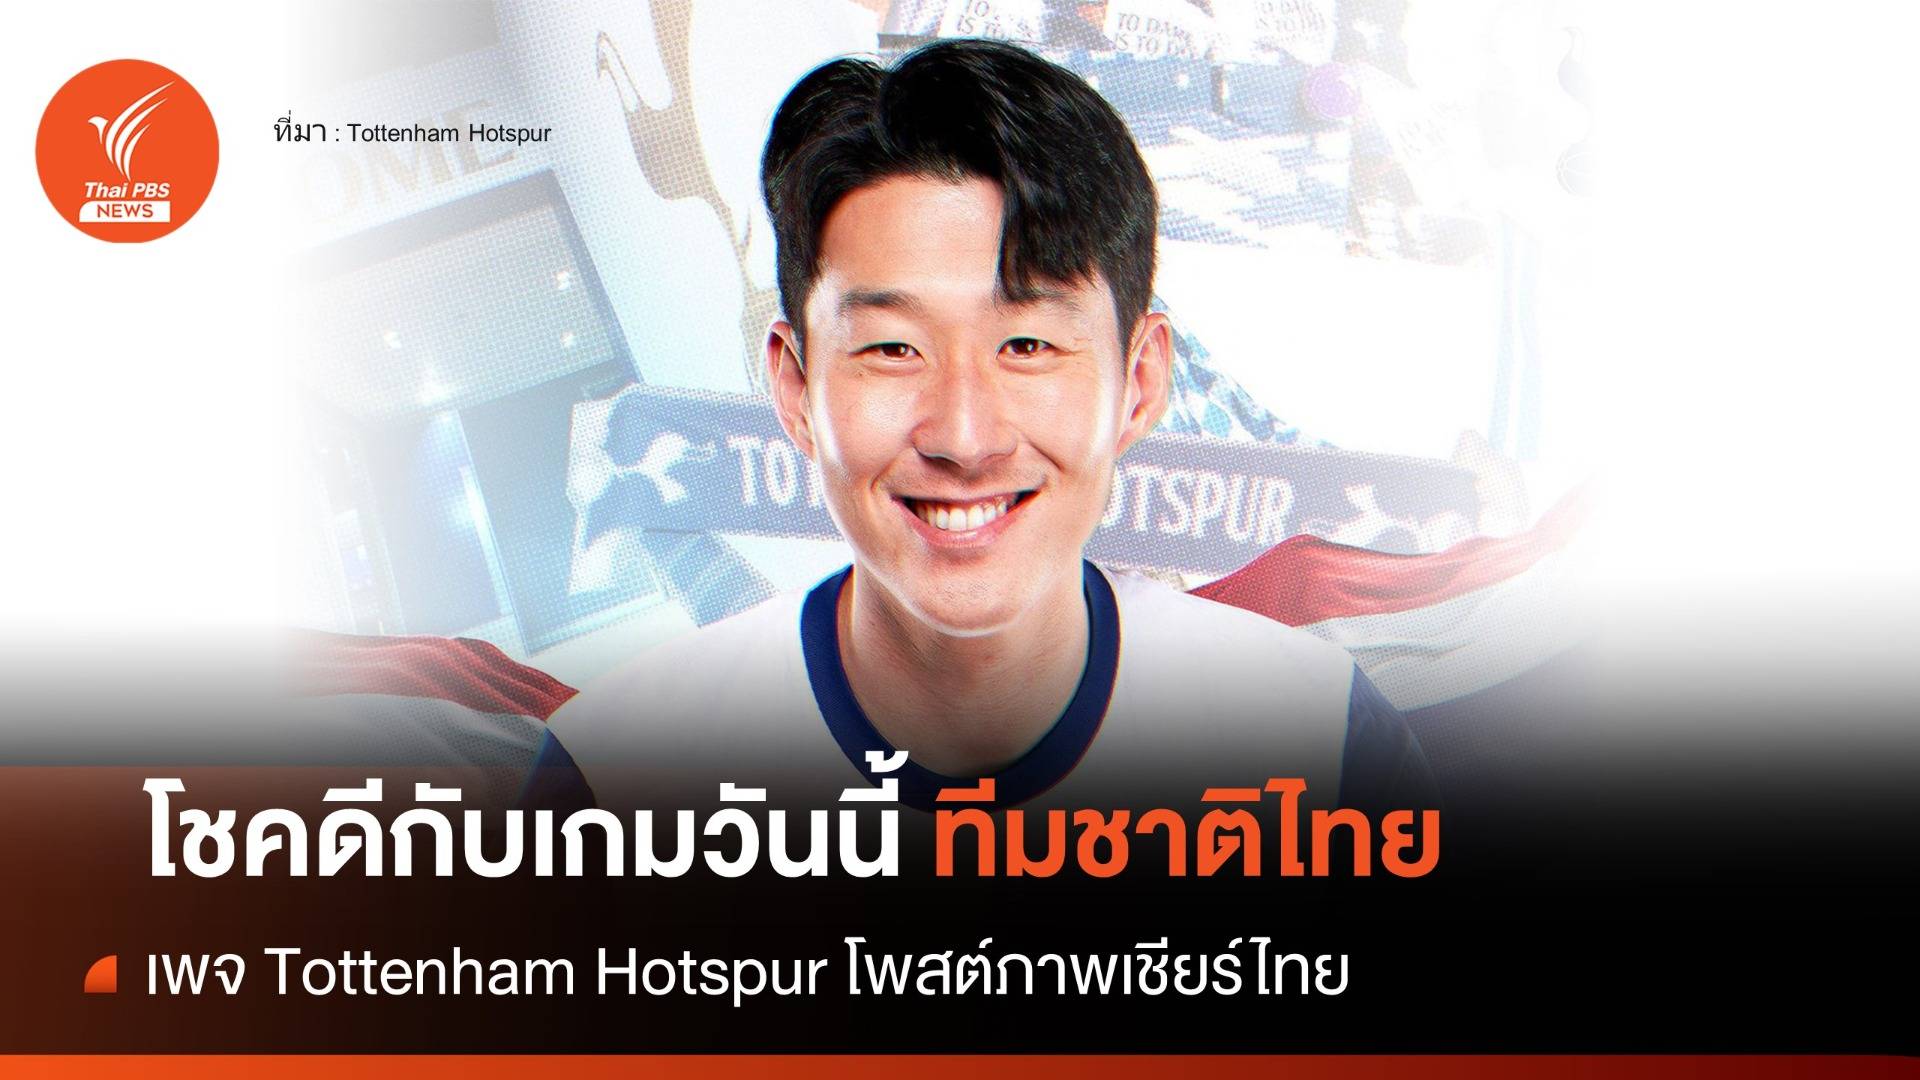 "สเปอร์ส" โพสต์ภาพ "ซน ฮึงมิน" ร่วมเชียร์ทีมชาติไทย   